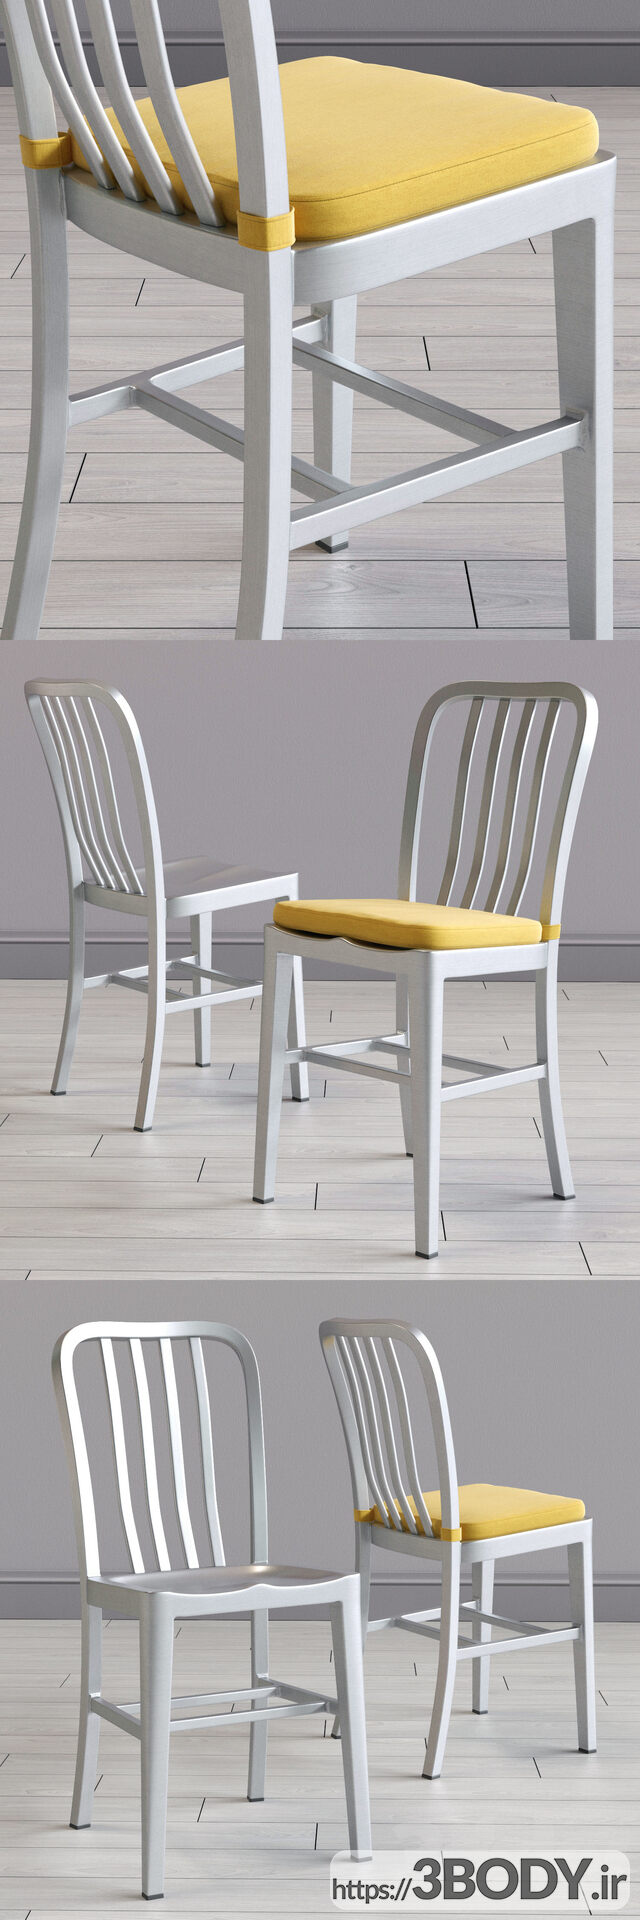 مدل سه بعدی صندلی غذاخوری دلتا و میز آوالون (Delta & Avalon) عکس 3